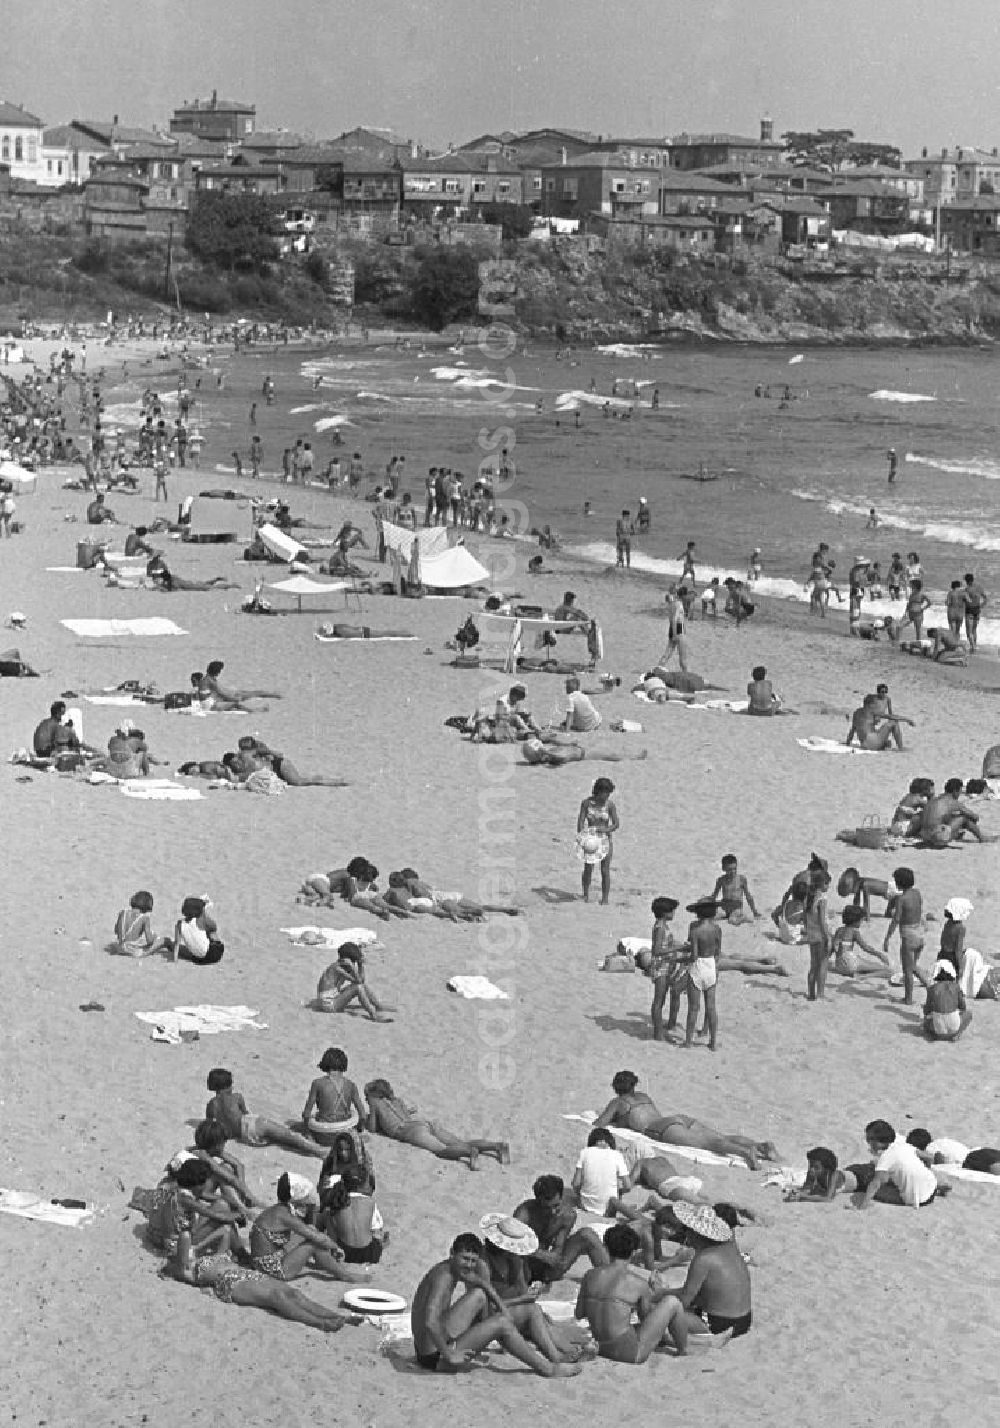 Prerow: Am Strand von Prerow auf der Halbinsel Fischland-Darß-Zingst - Viele Feriengäste sonnen sich am Strand oder baden in der Ostsee. Im Hintergrund der dichtbebaute Ort. Prerow zählte zu den beliebtesten Ferien-Orten in der DDR. Im Sommer waren etwa 2